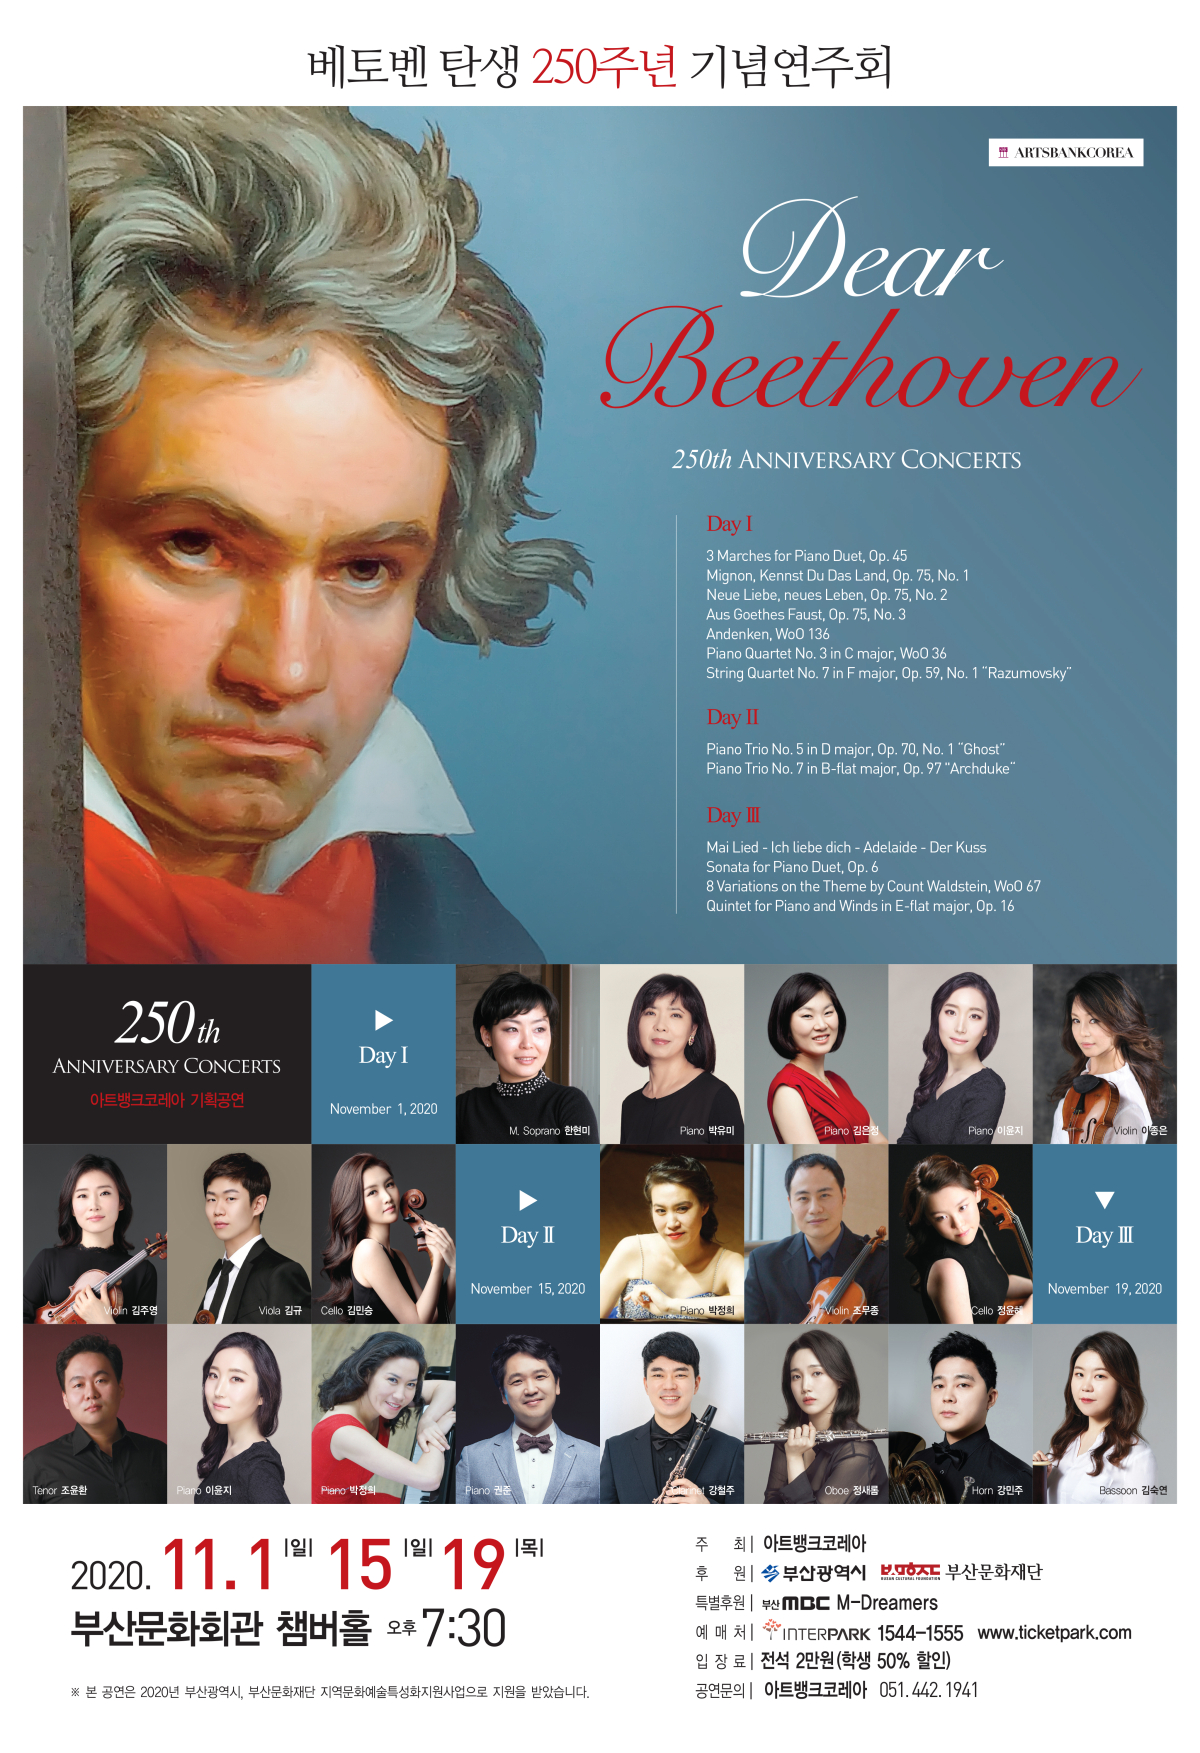 베토벤 탄생 250주년 기념음악회 1 - Dear Beethoven